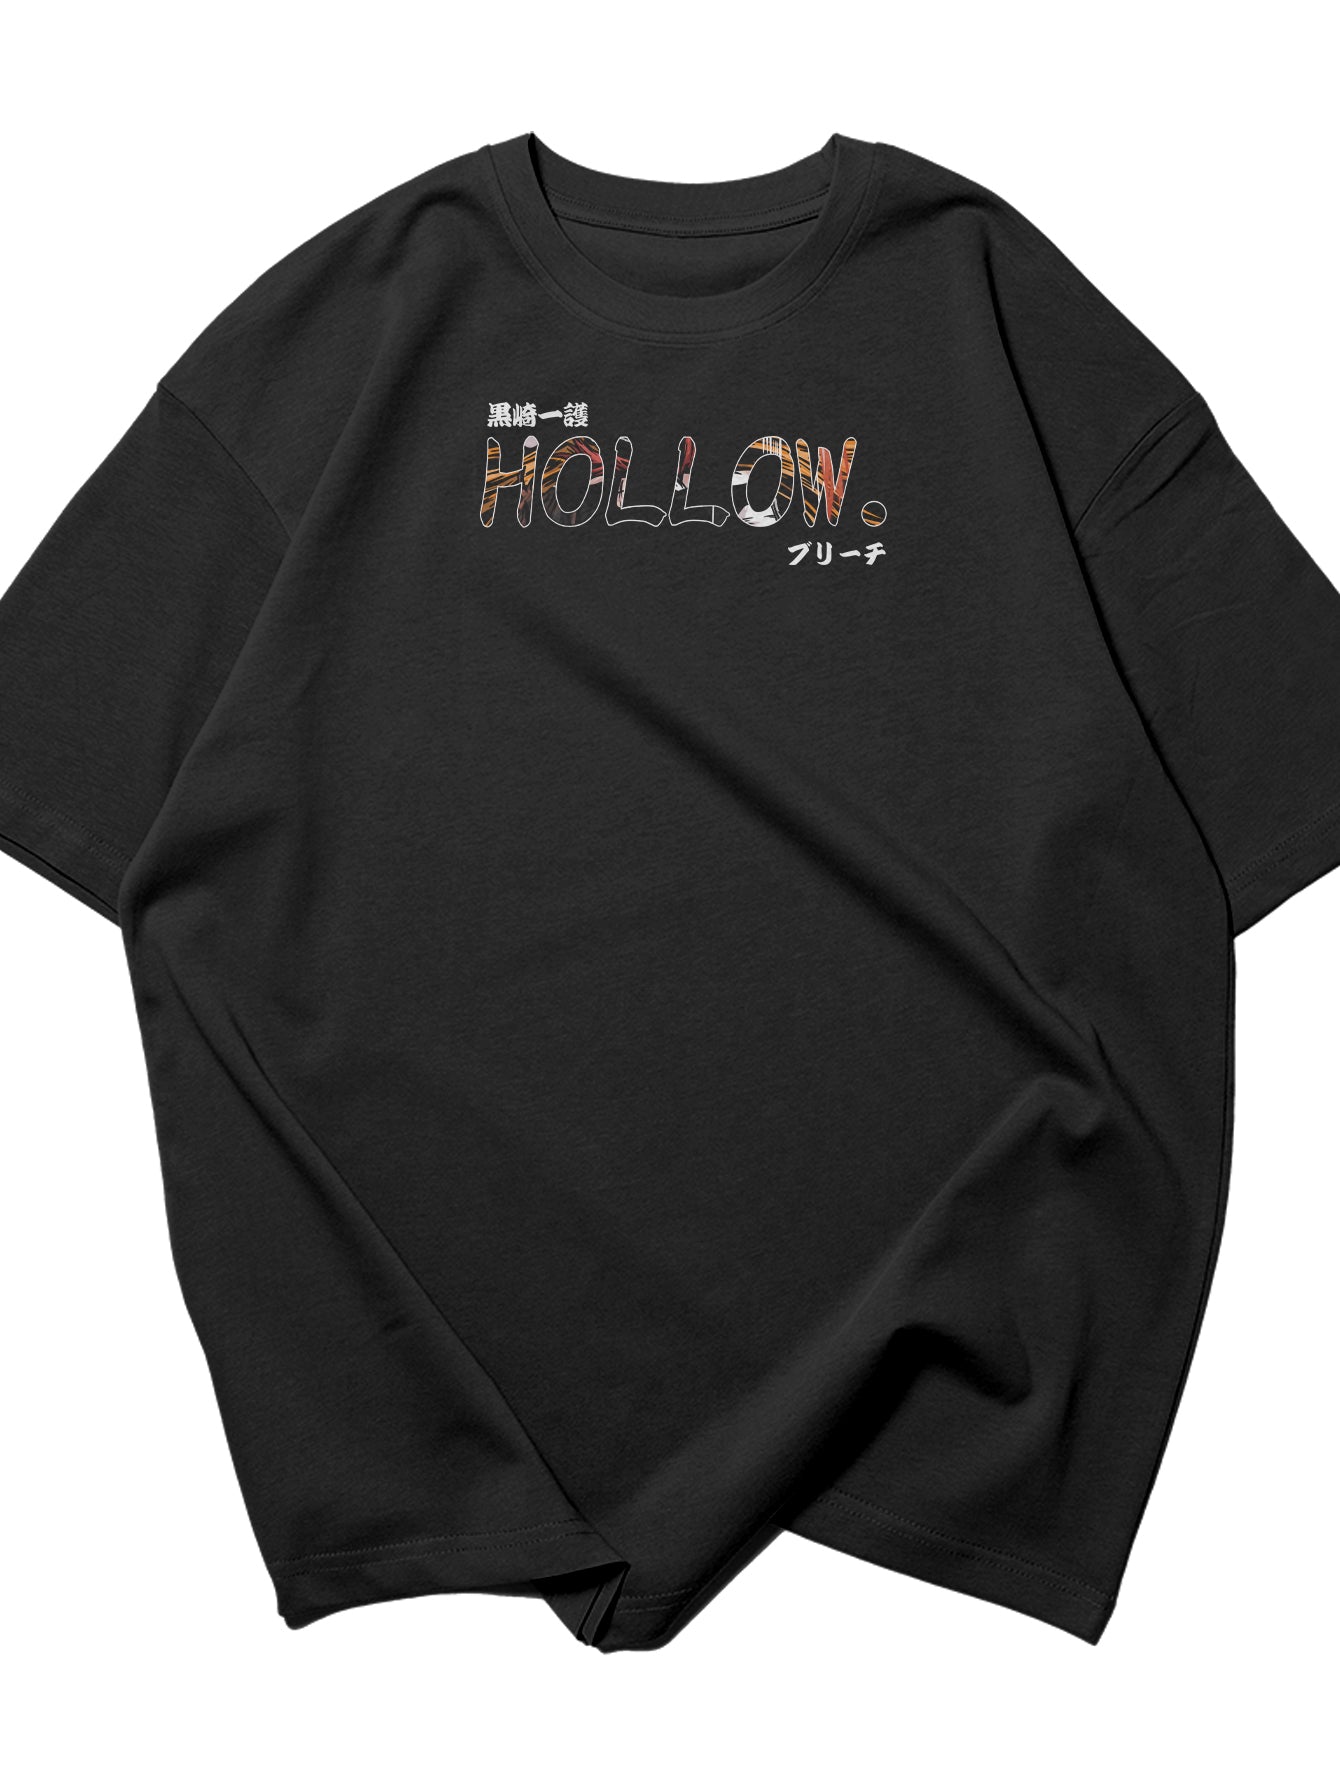 Hollow Blaze Oversize T-Shirt